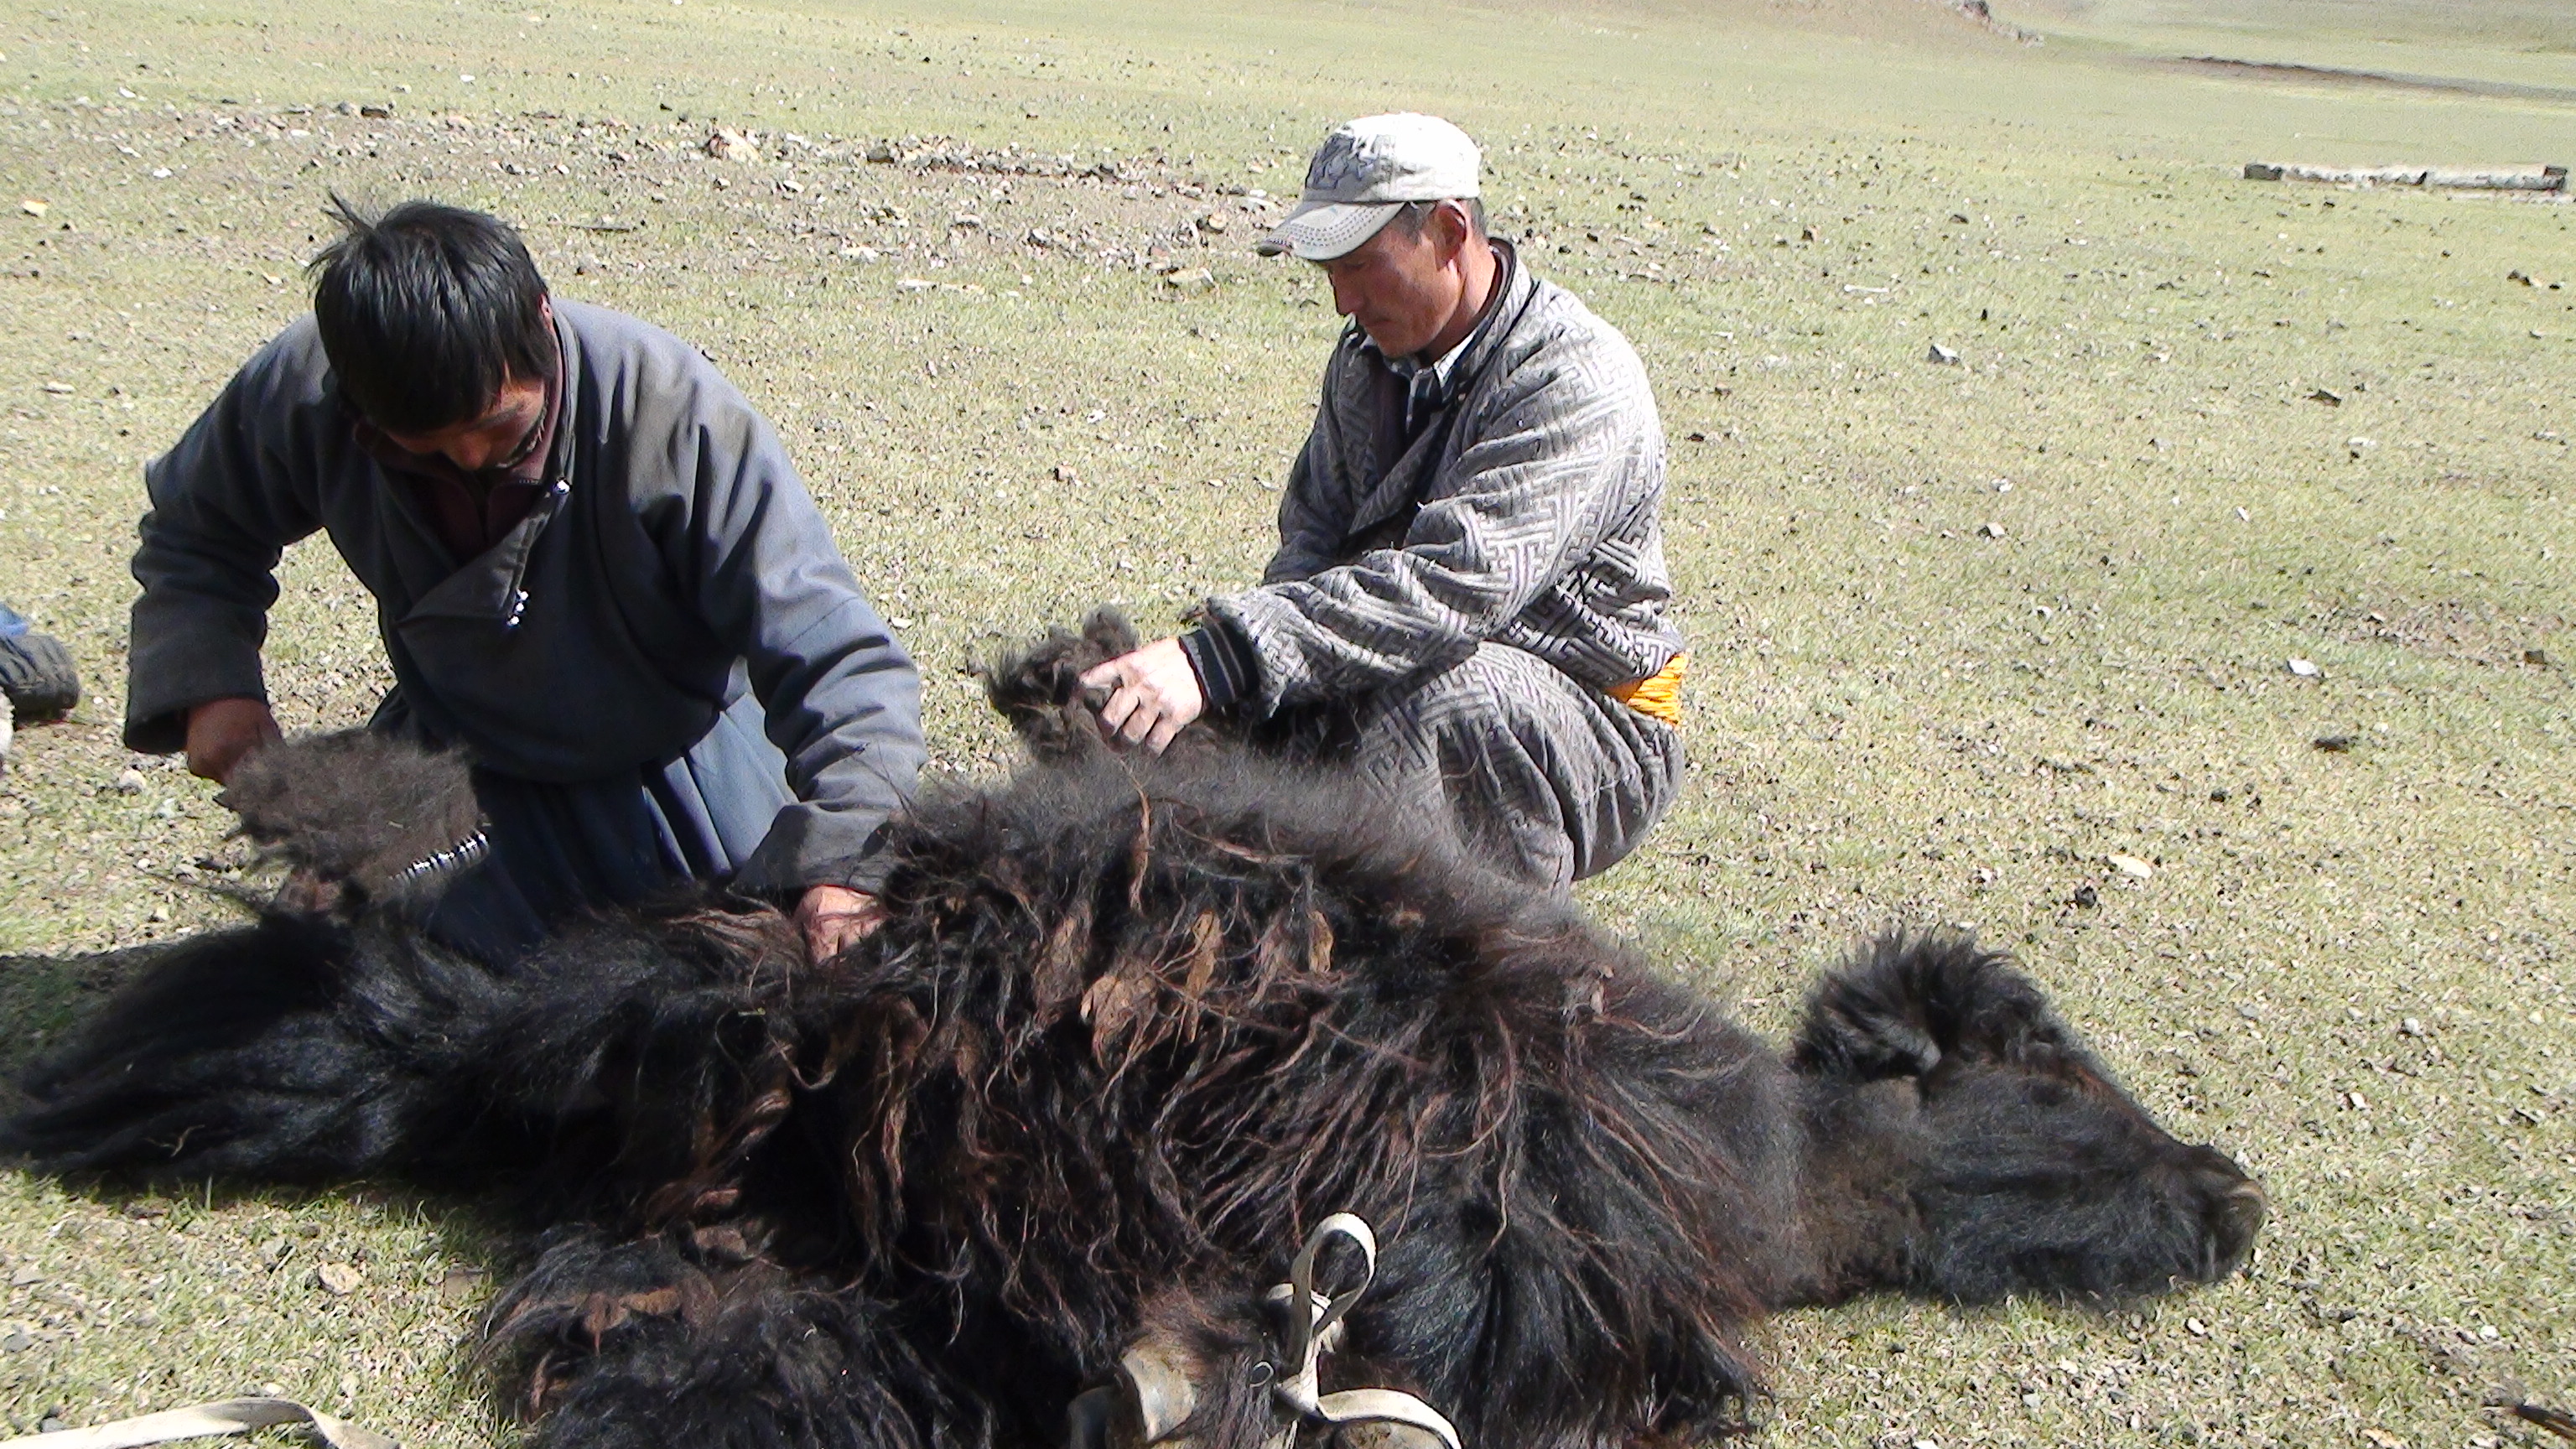 Dos hombres esquilando un yak inmovilizado en el suelo.